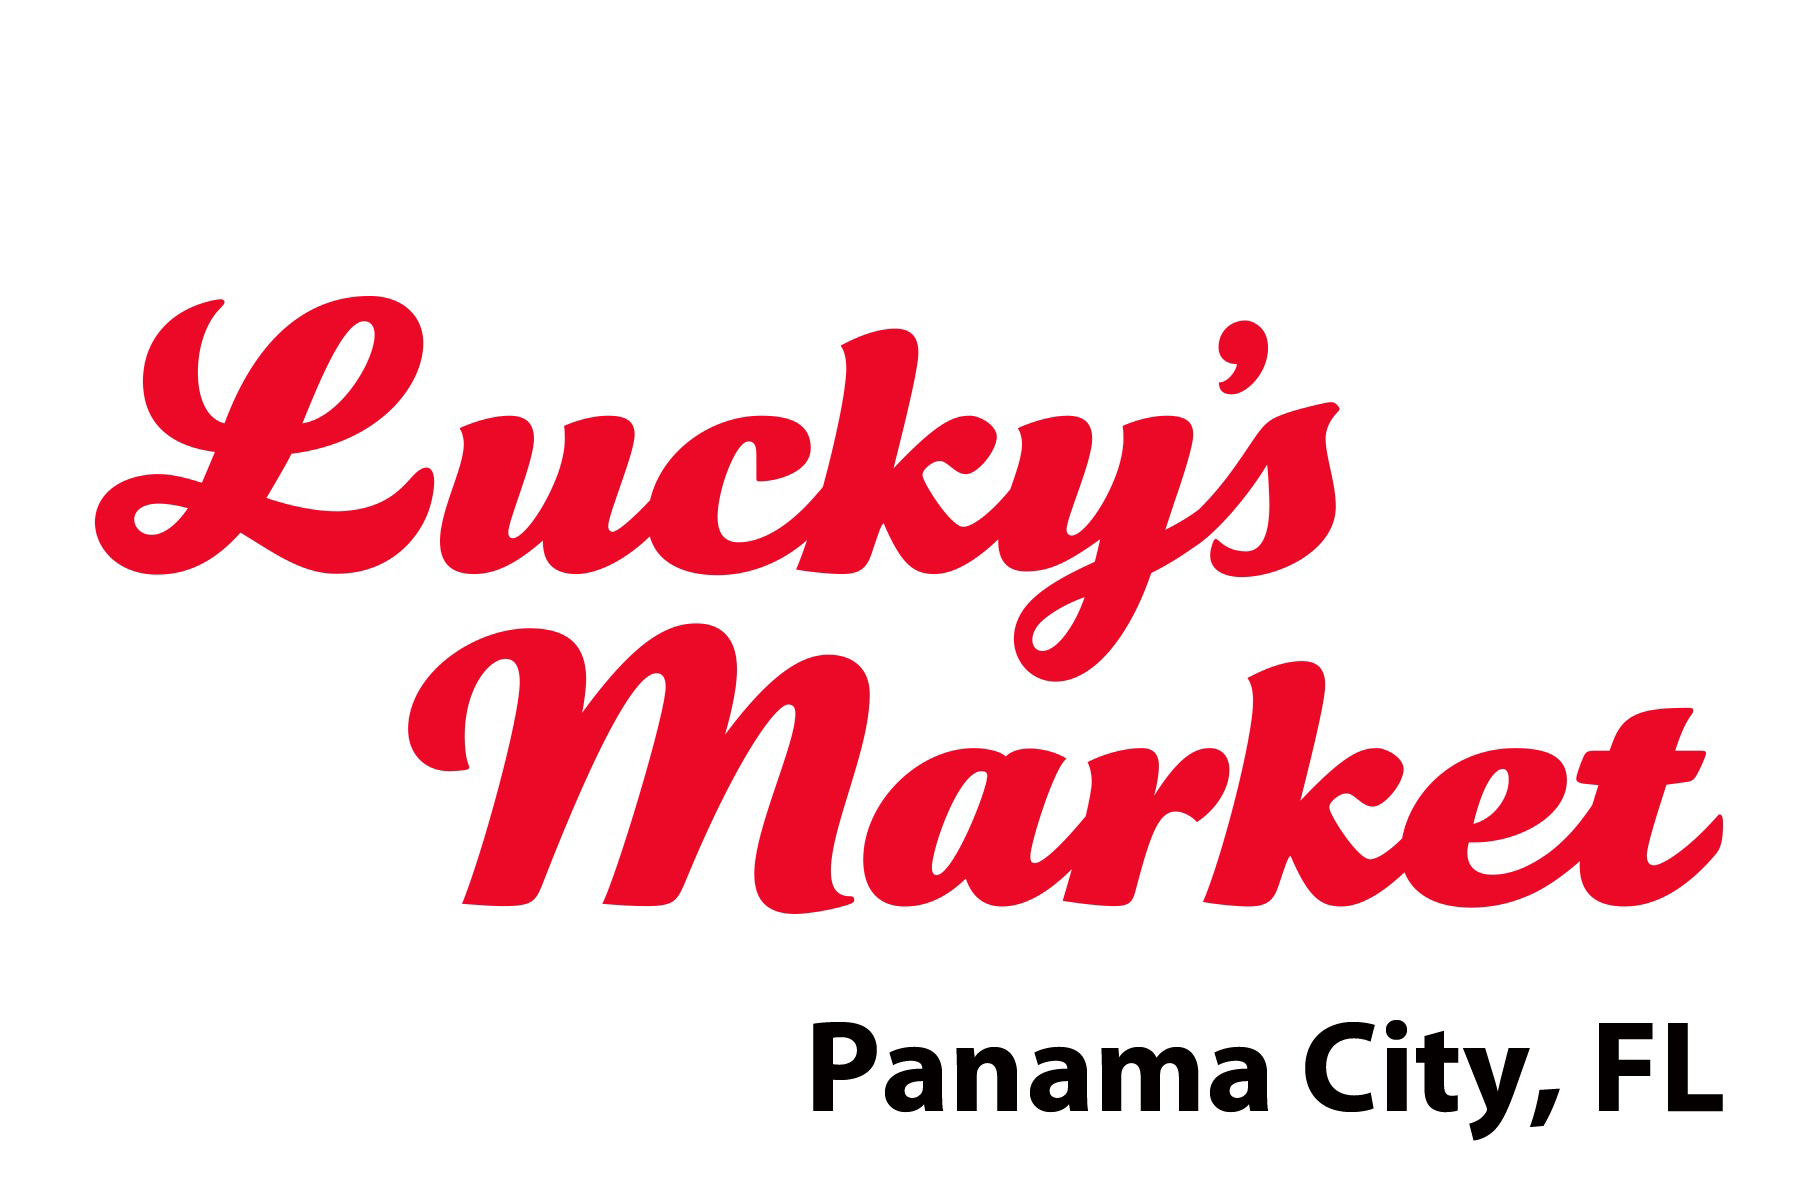 Panama City, FL - Lucky's Market